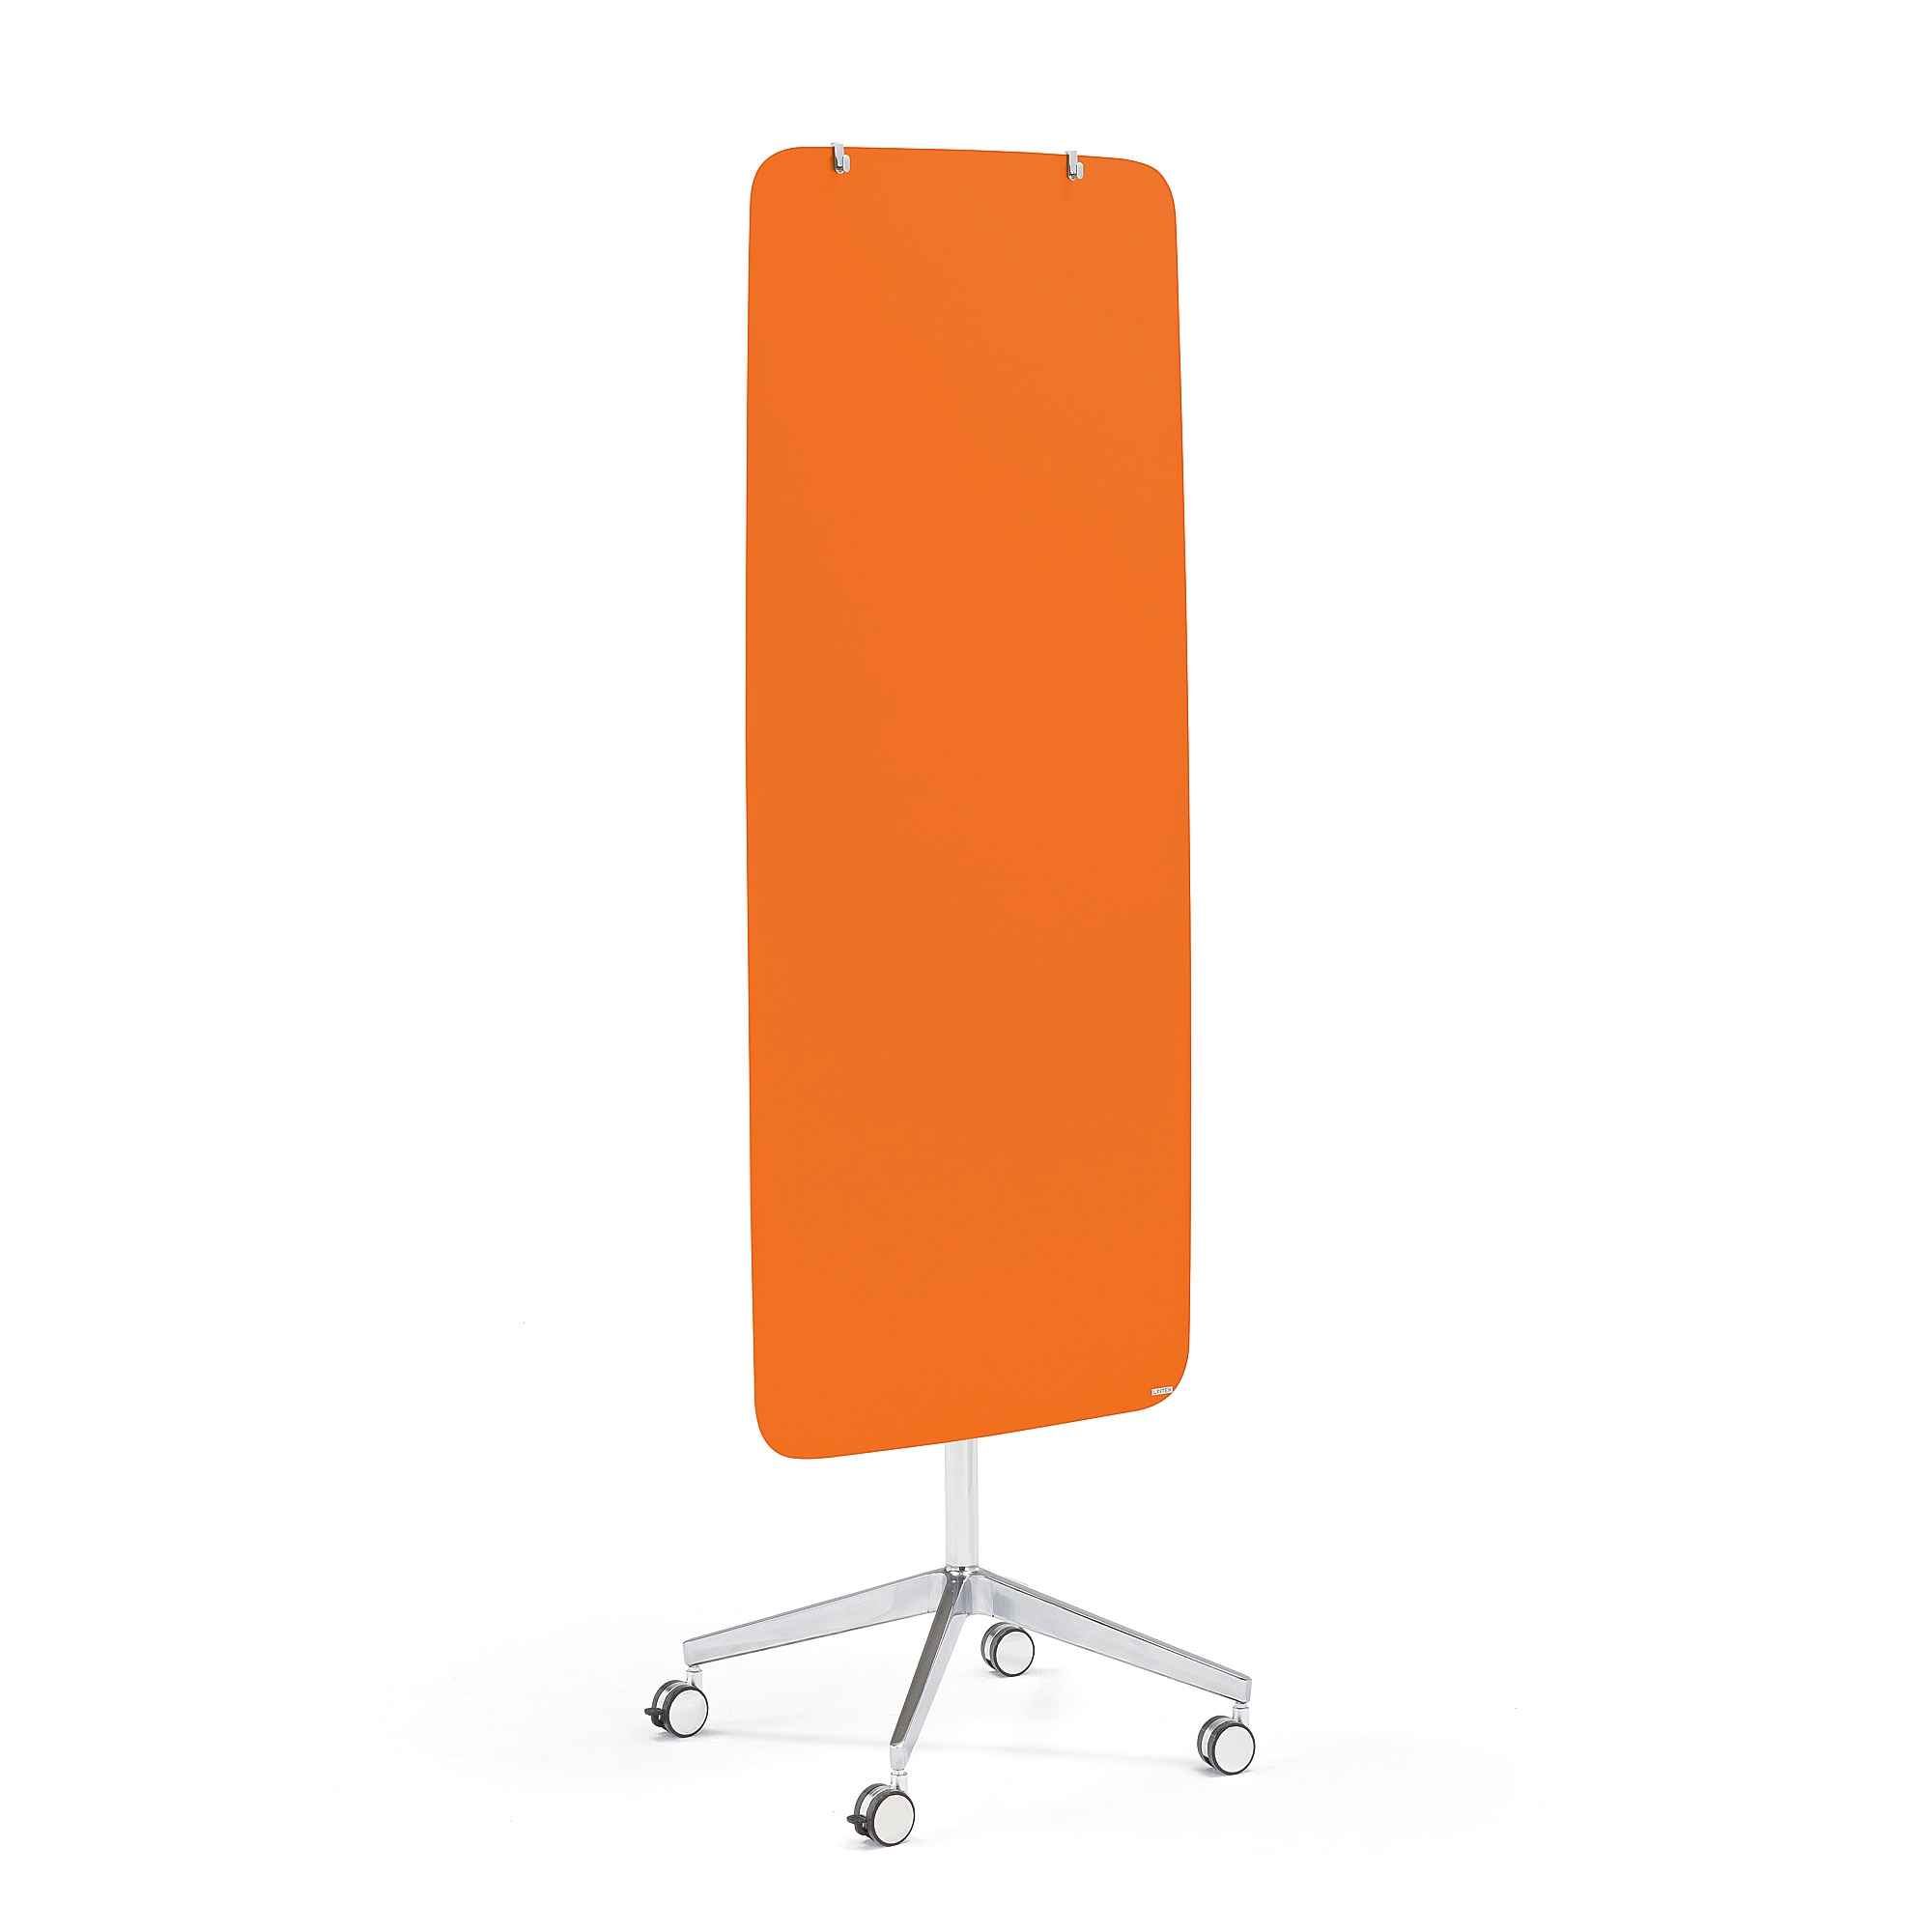 Mobilní skleněná tabule STELLA, magnetická, kulaté rohy, pastelově oranžová